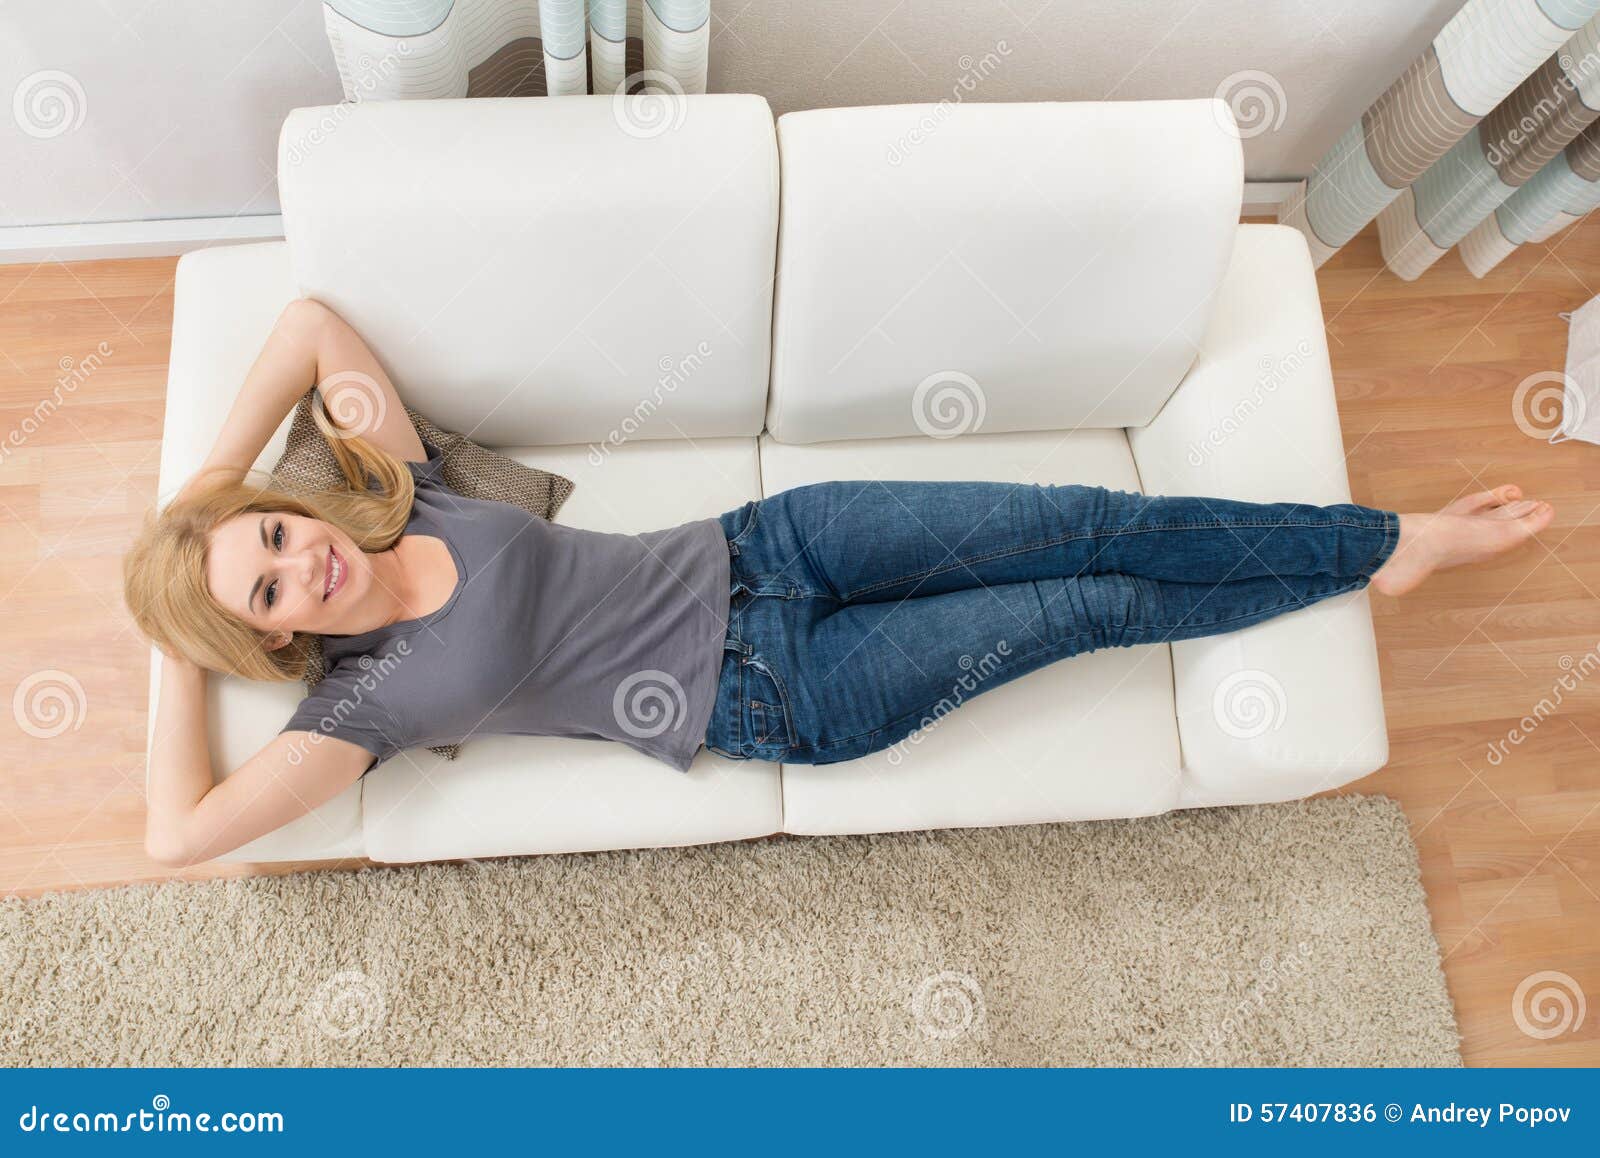 happy woman lying on sofa